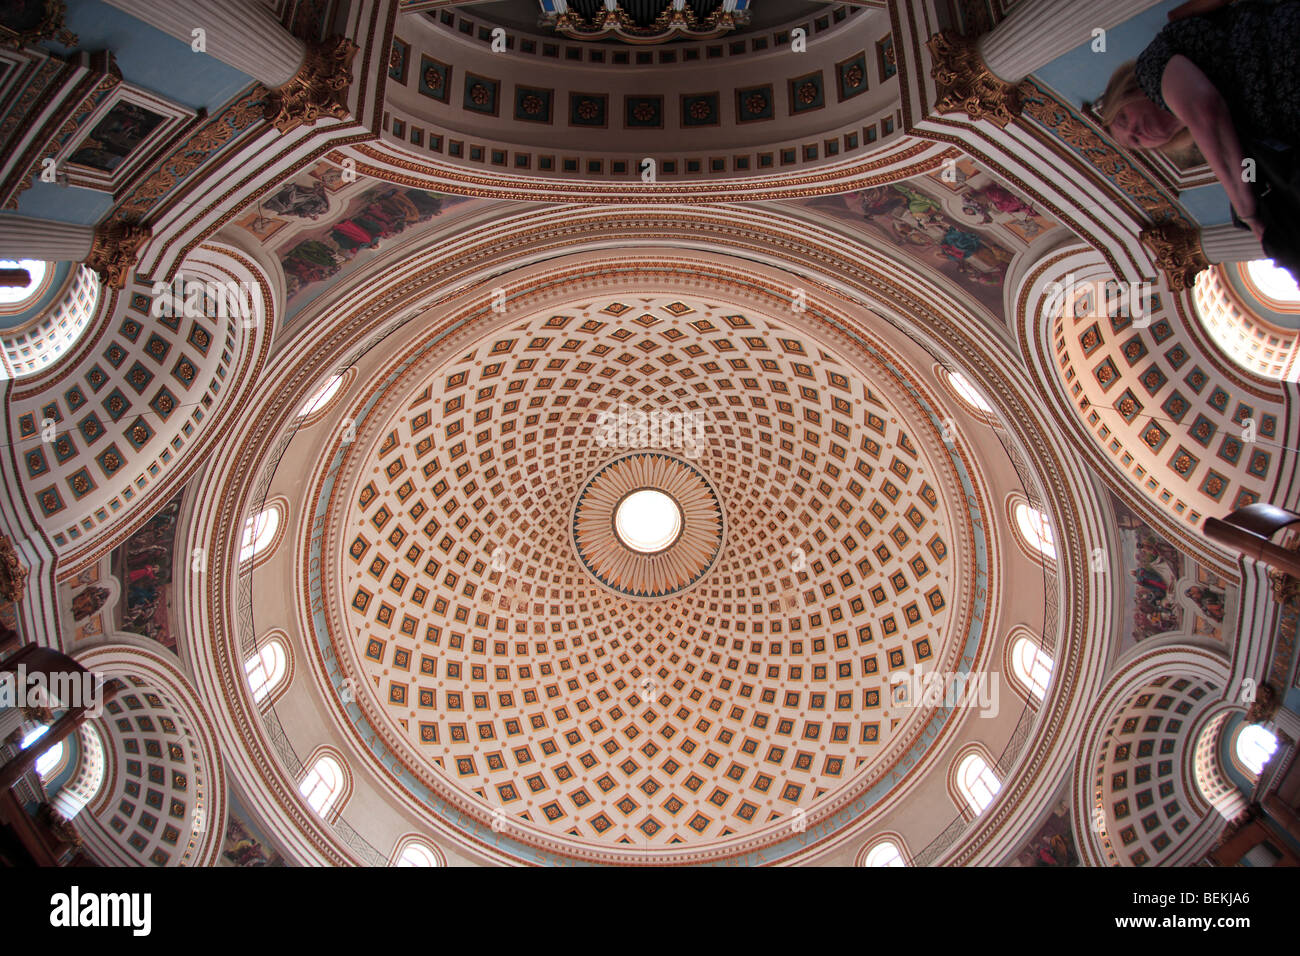 Interior of Mosta Dome, Mosta, Malta Stock Photo